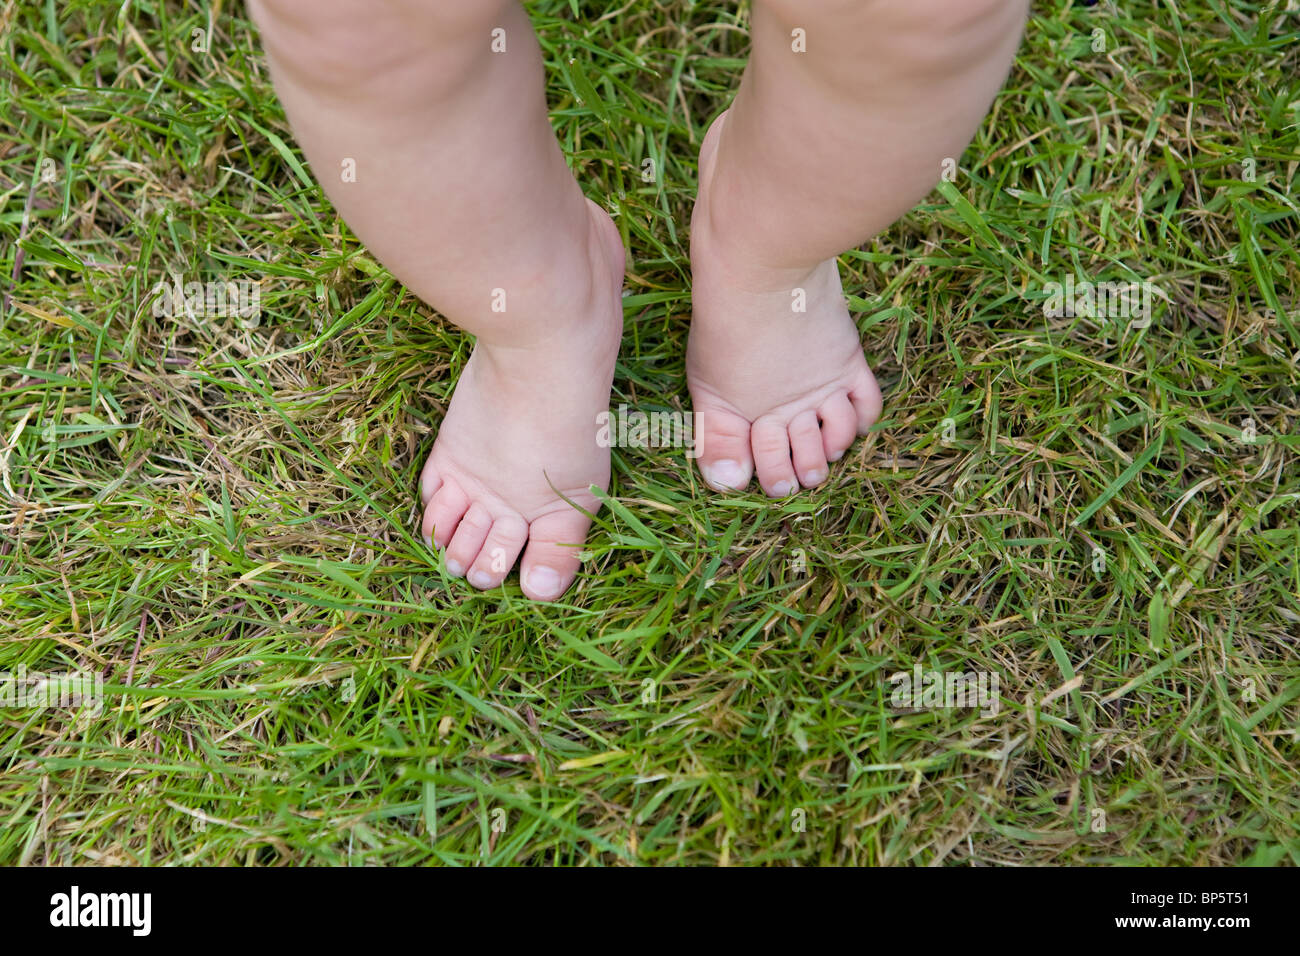 К чему снится ноги ребенка. Босиком мальчик на траве. Грязные босые ноги детей. Пятки детей на траве. Дети босые на траве.